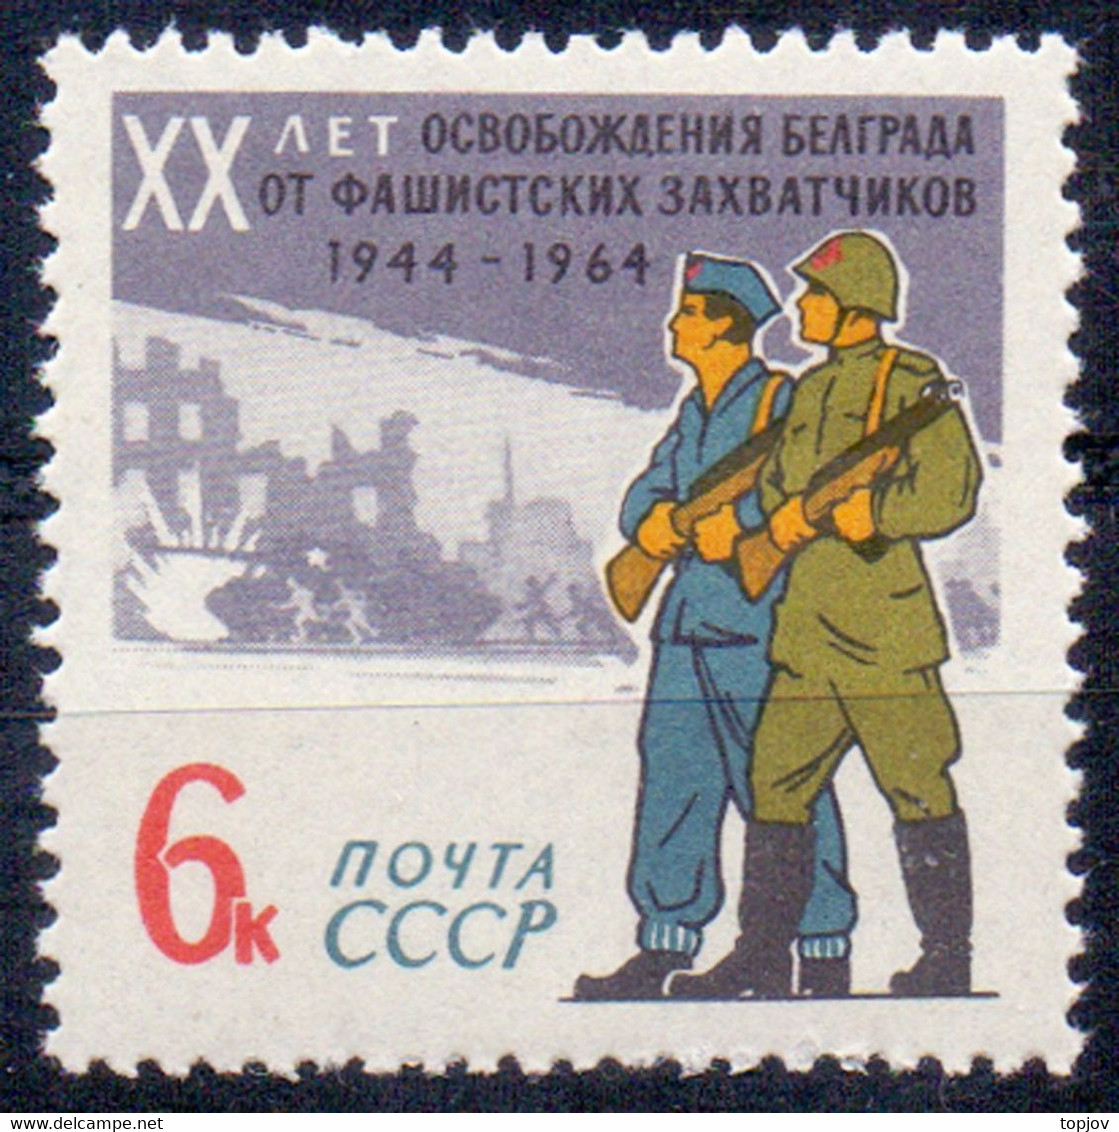 JUGOSLAVIA -  RUSSIA - LIBERAT. BELGRAD RED ARMY + PARTIZANS - **MNH - 1964 - Sin Dentar, Pruebas De Impresión Y Variedades